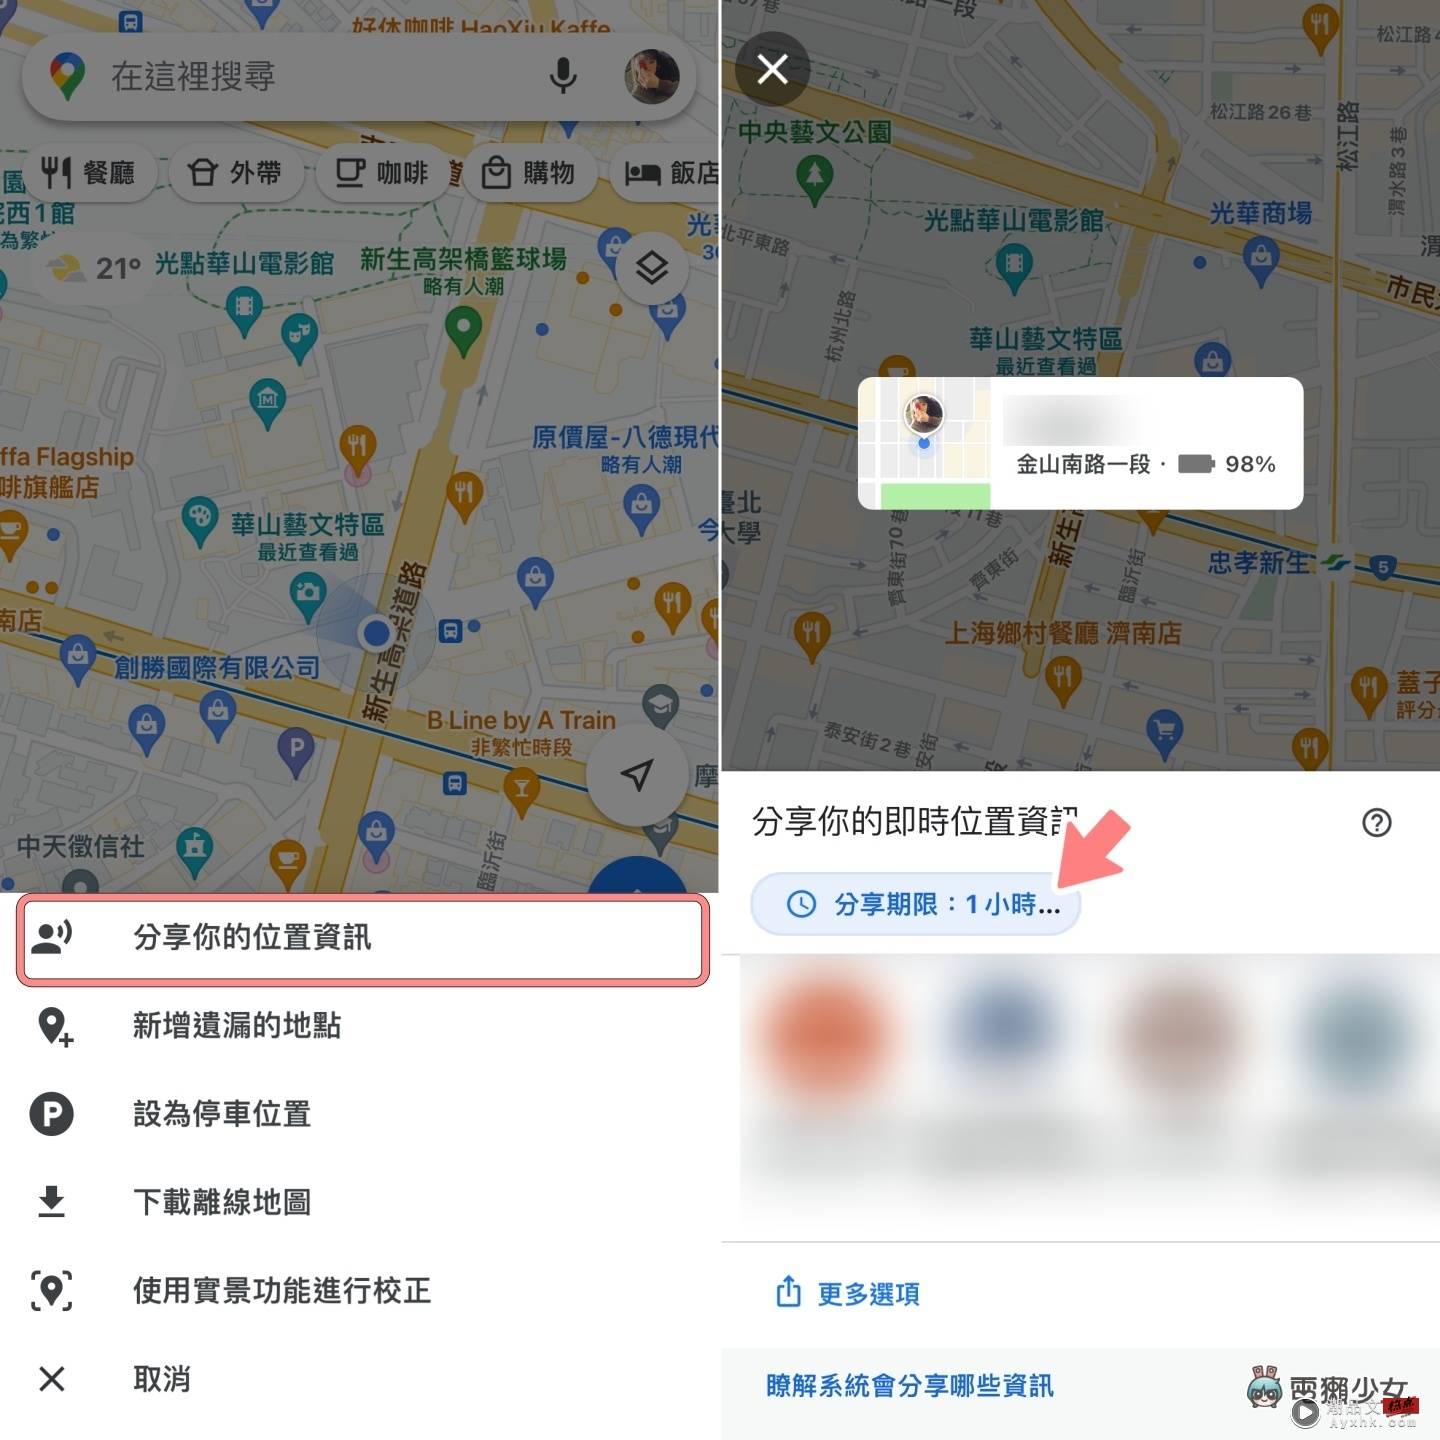 机车族必看！7 个 Google Maps 实用小技巧：路线选项、停车注记、用实景功能重新校正 数码科技 图9张